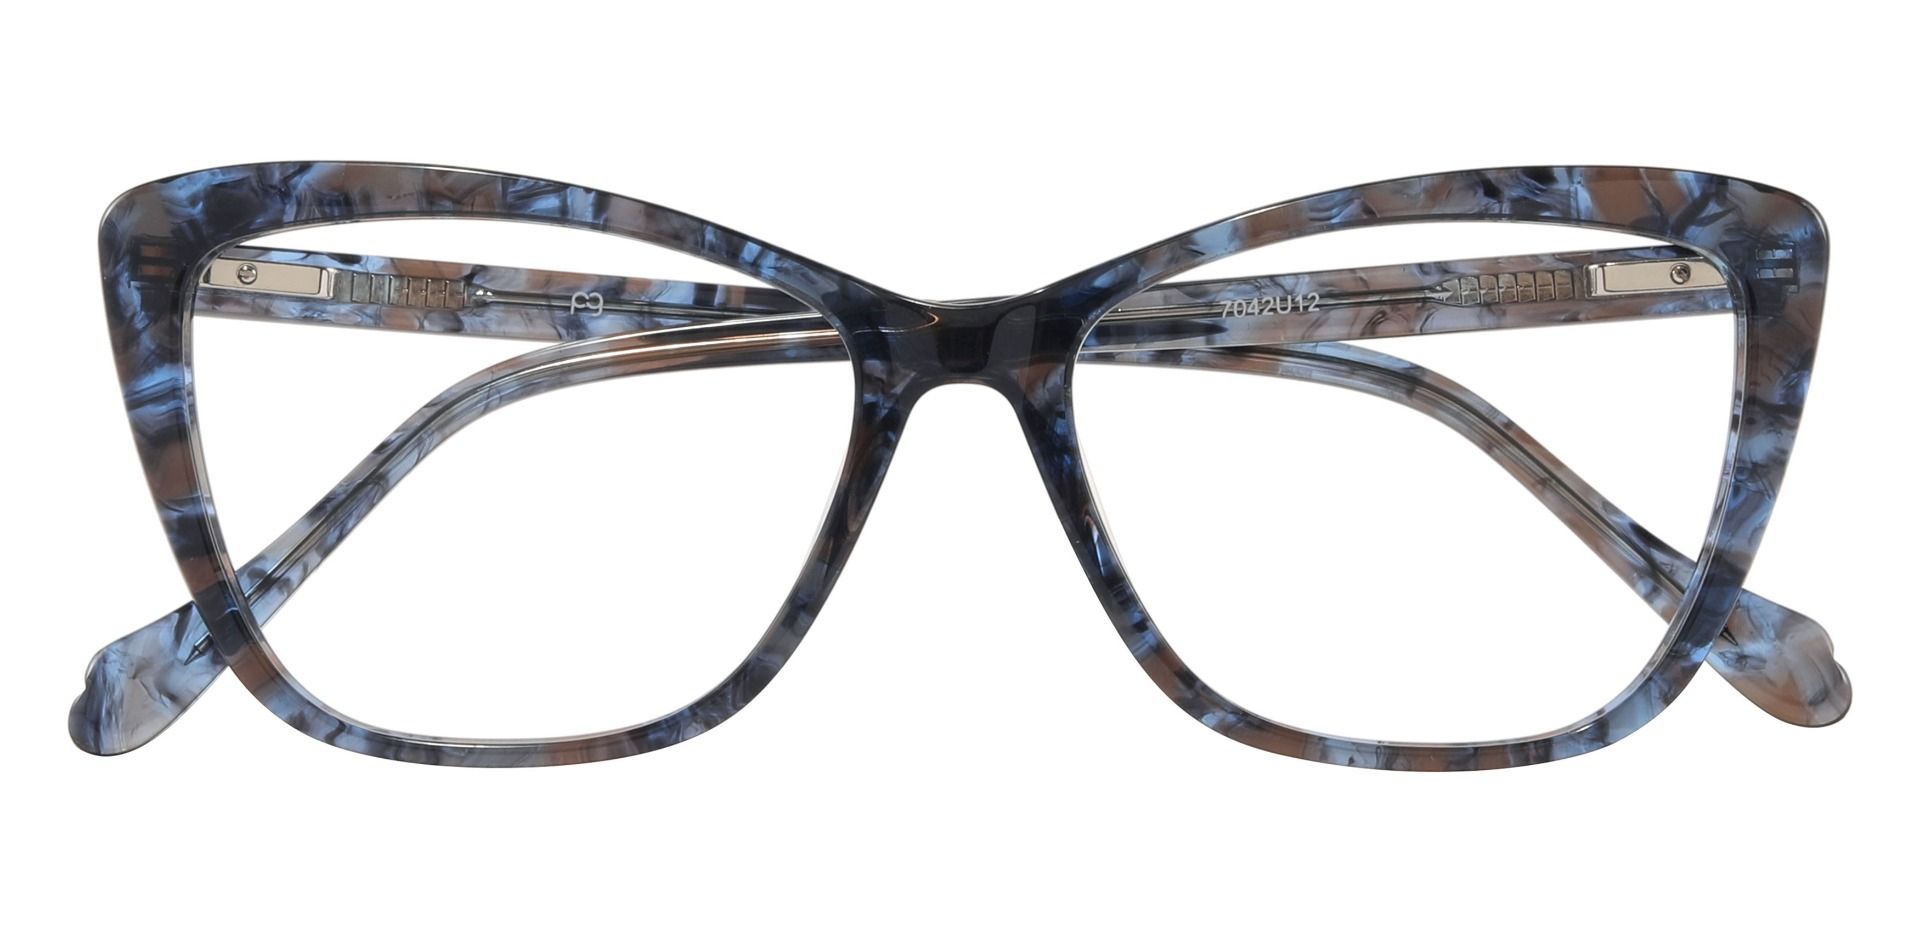 Jessica Cat Eye Prescription Glasses - Blue | Women's Eyeglasses ...